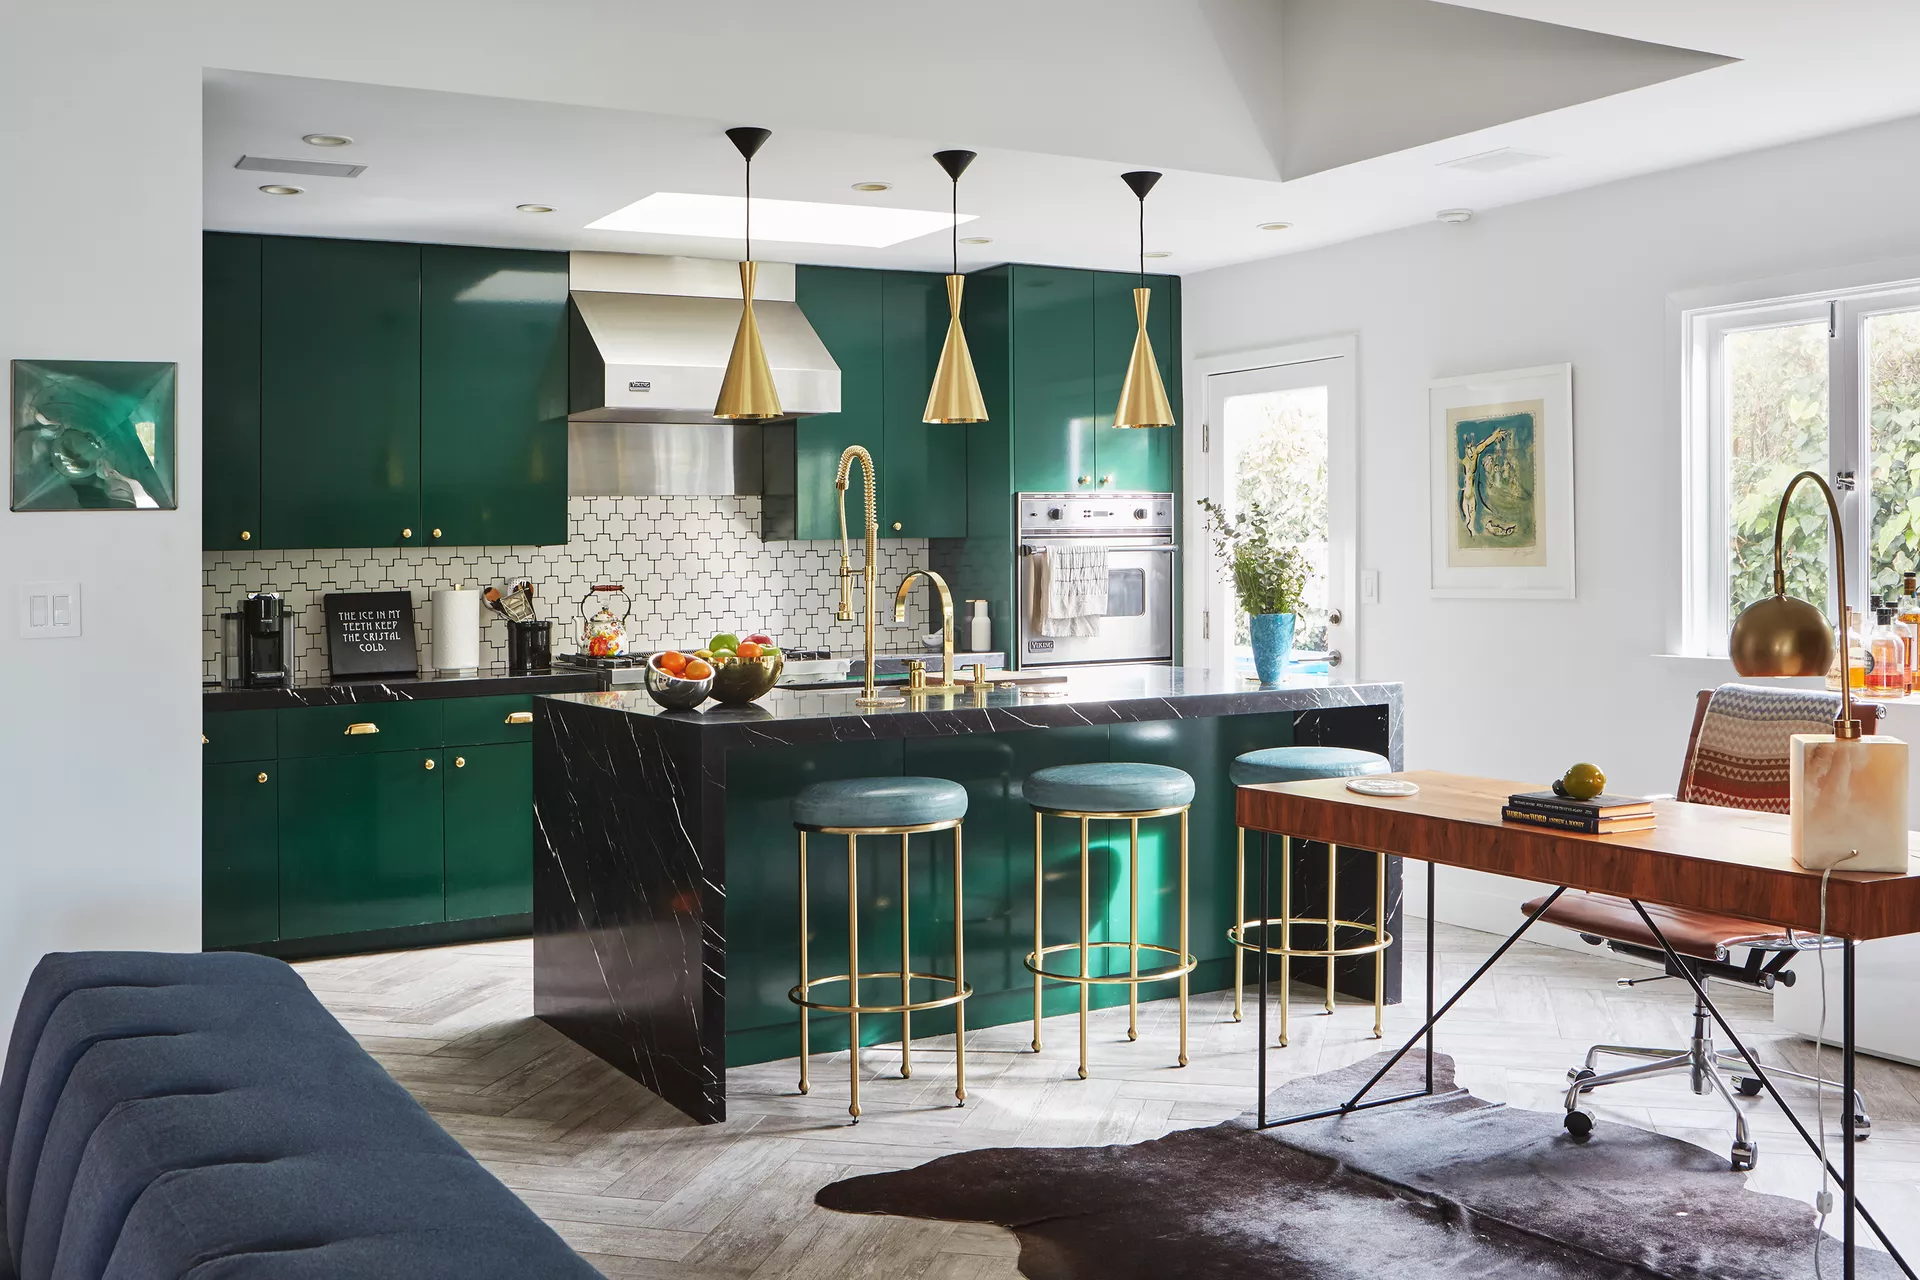 Smaragdgrün in der Küche - eine originelle Innenraumidee